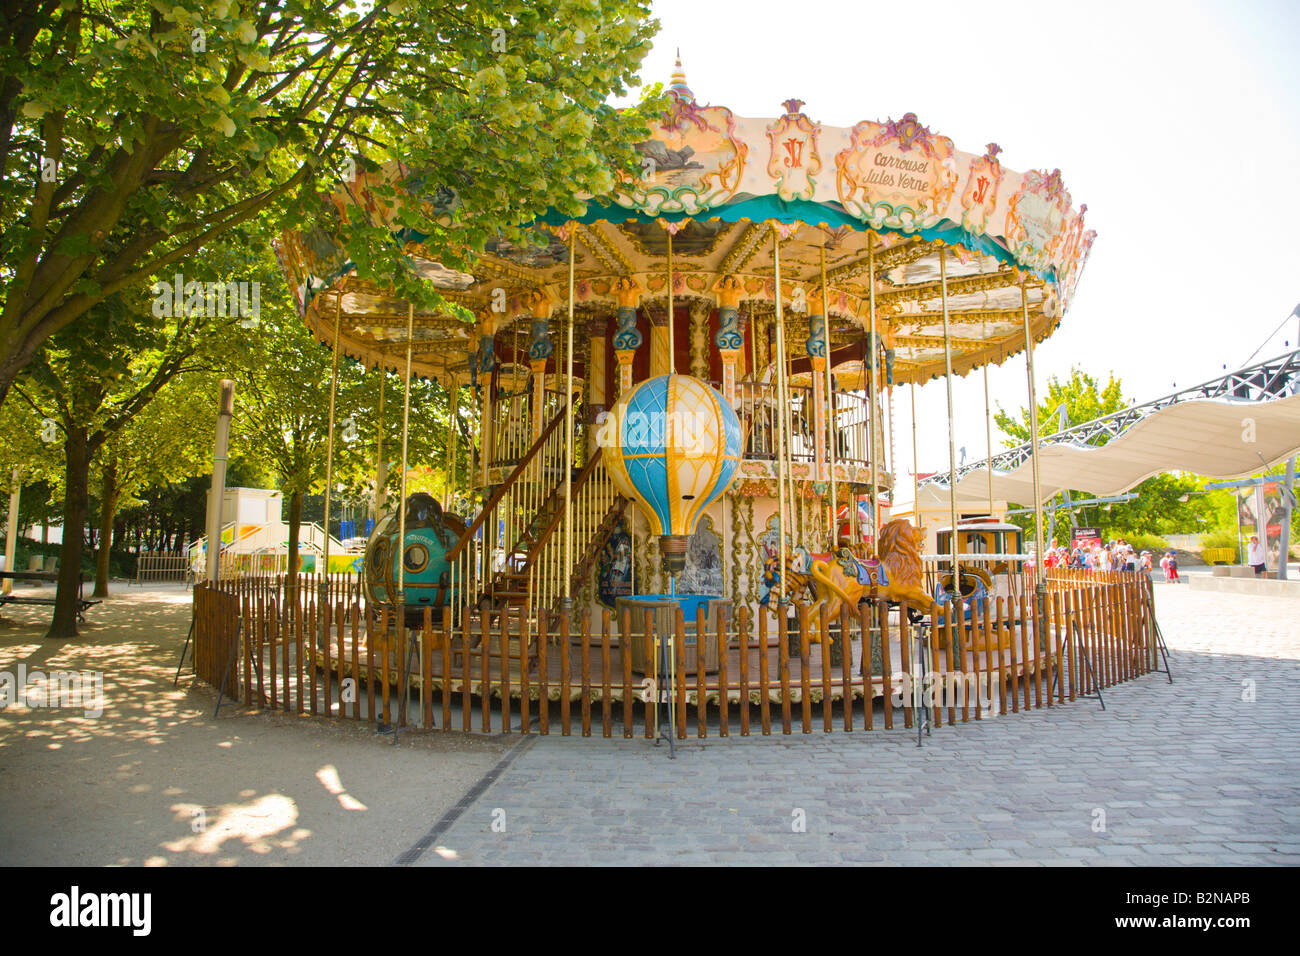 Carousel au Parc de La Villette Paris France Banque D'Images